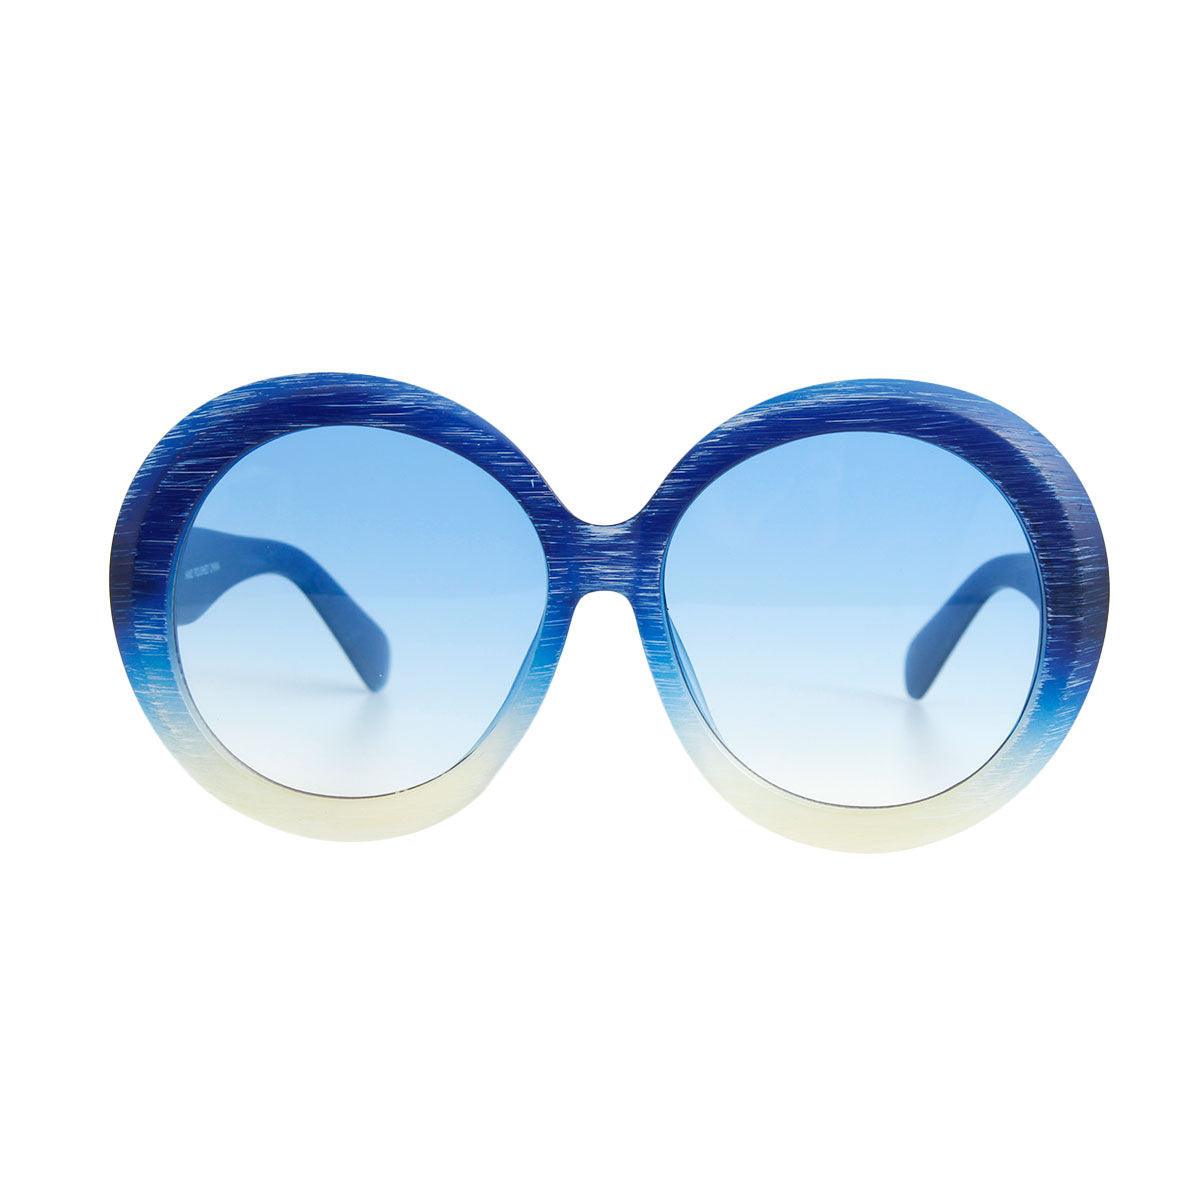 Sunglasses Women Candy Color Blue Plastic